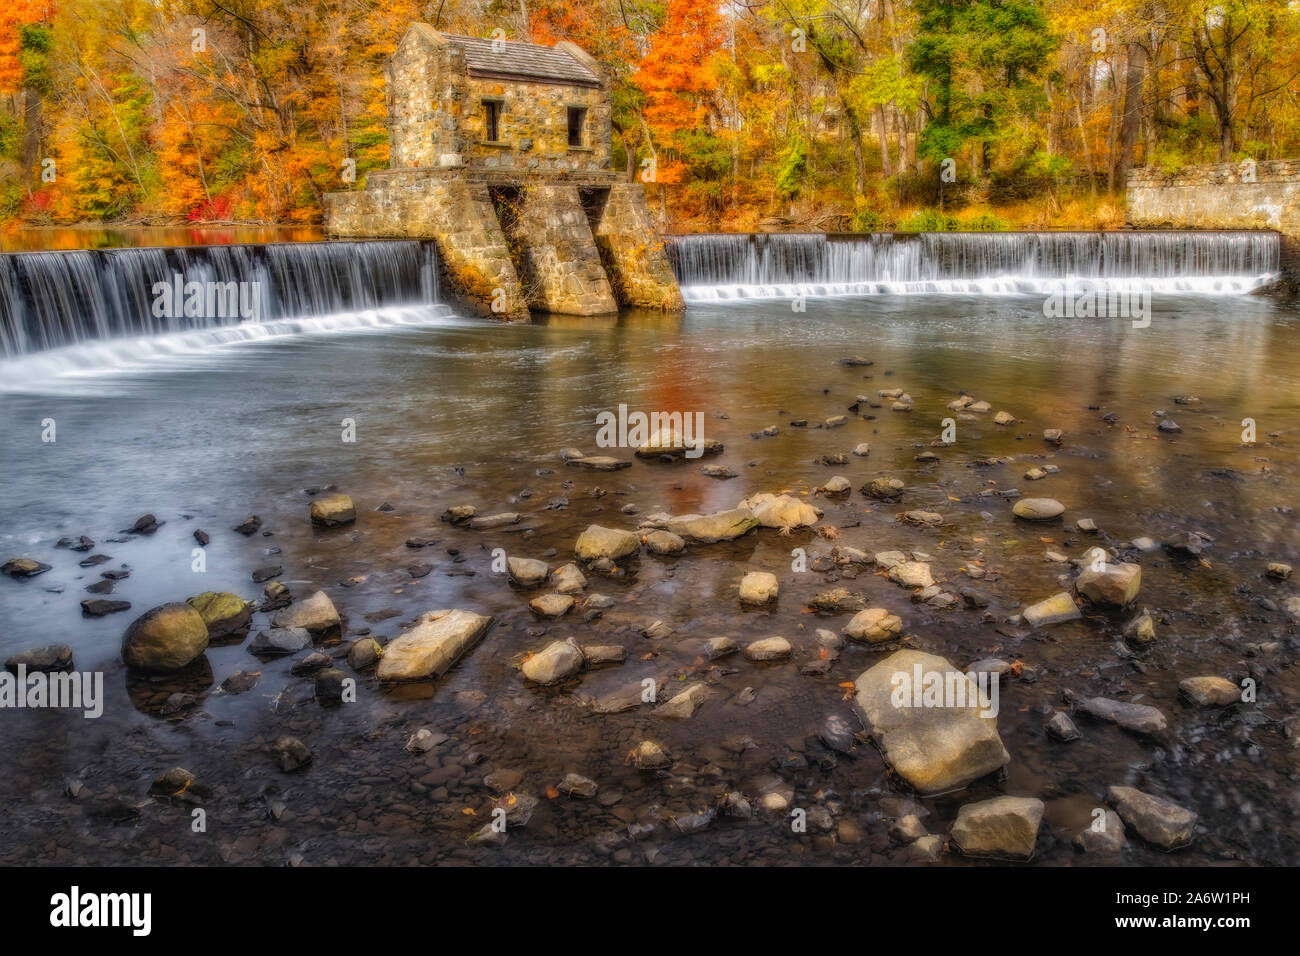 Speedwell Presa y cascada - Vistas a la estructura de piedra sobre el río Whippany rodeado por los cálidos colores del follaje de otoño. Foto de stock